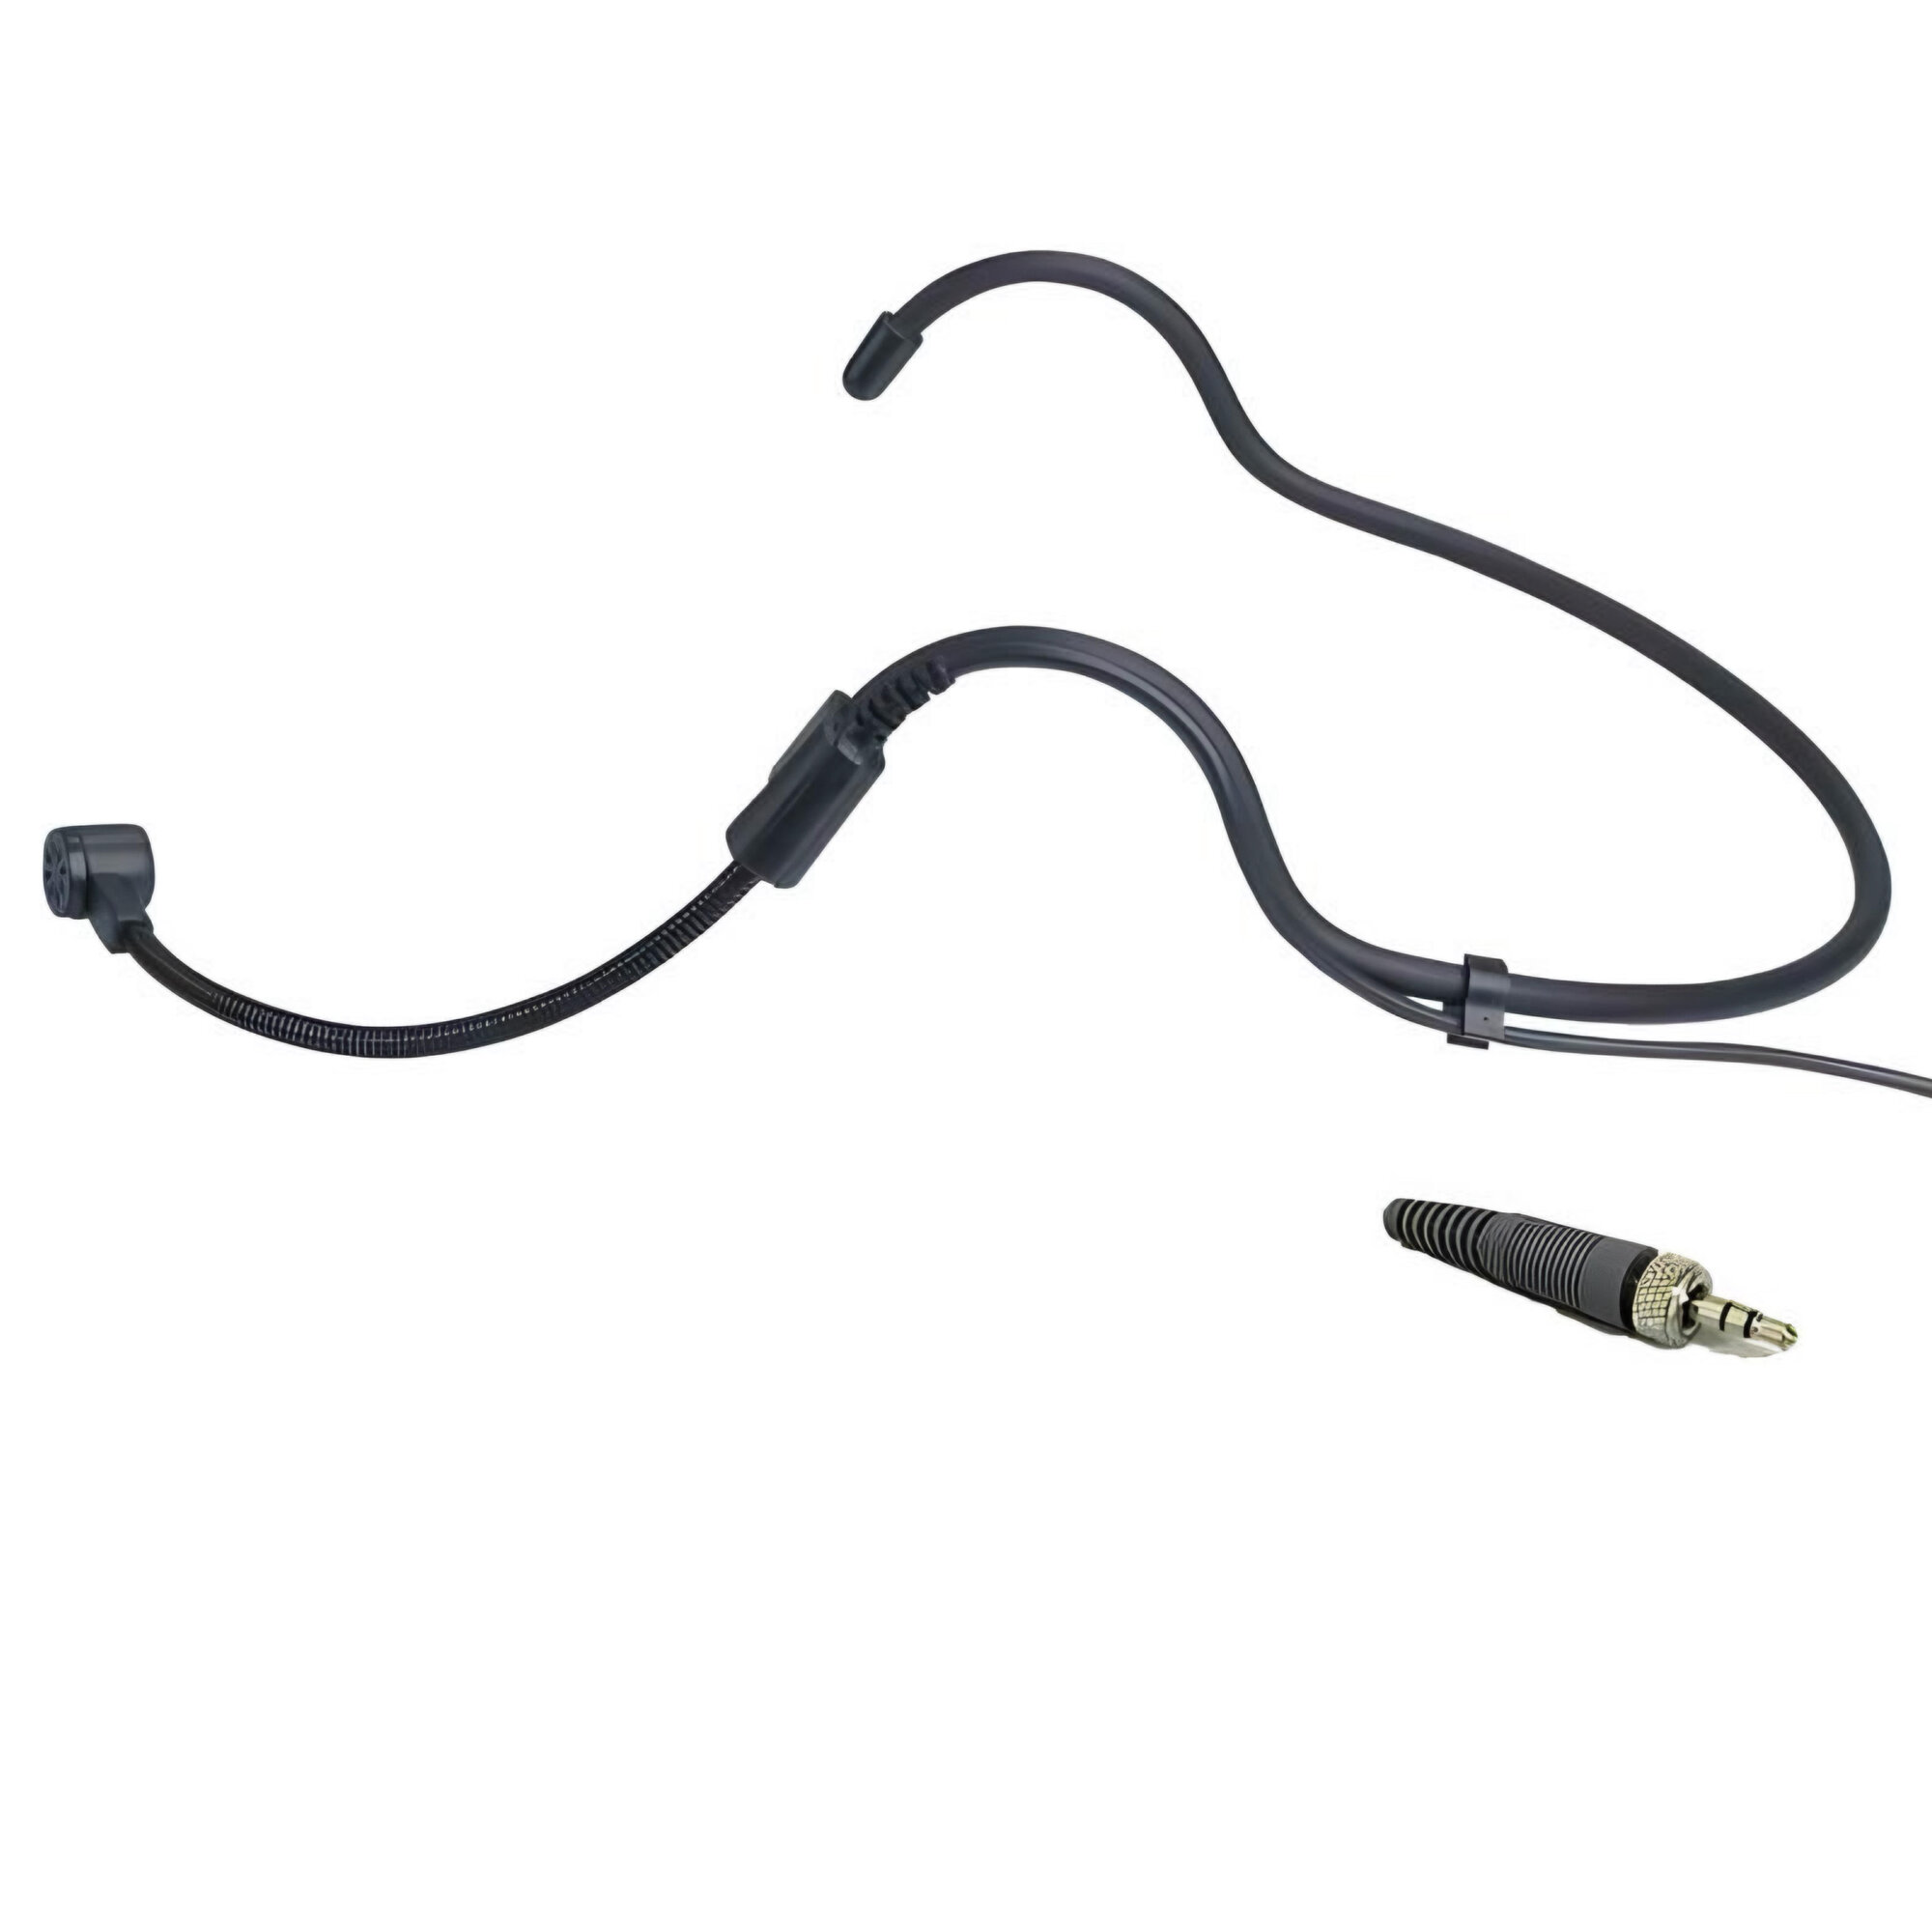 Головной микрофон для поясного передатчика NOIR-audio HS6-J3.5NUT Stereo черного цвета с разъемом мини джек 3,5 мм. с гайкой стерео 3-pin